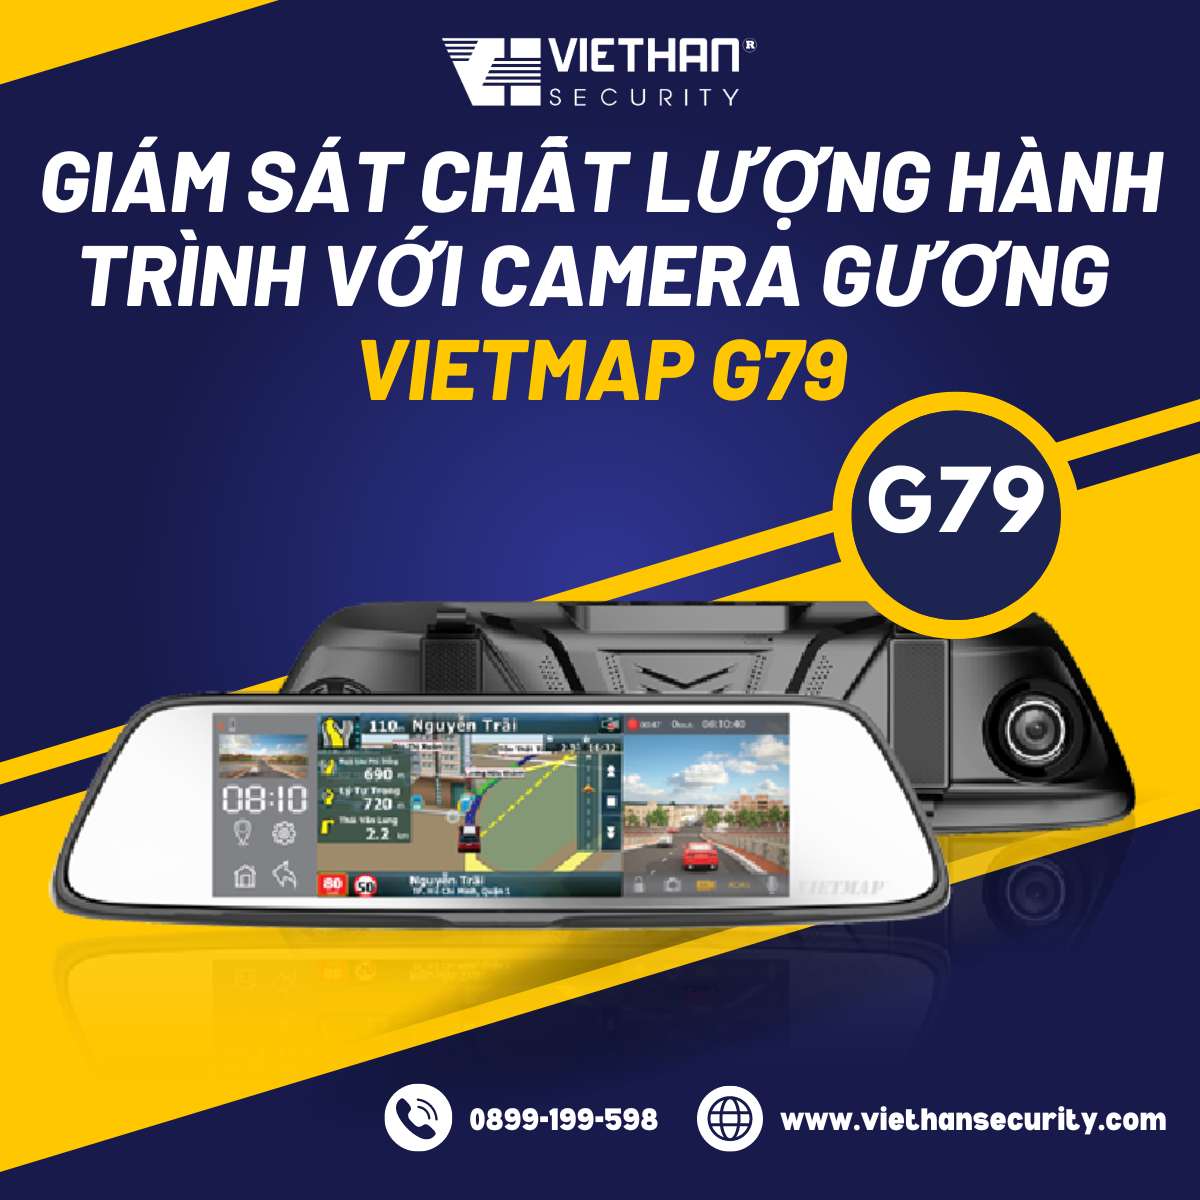 Giám sát chất lượng hành trình với camera gương Vietmap G79 chính hãng